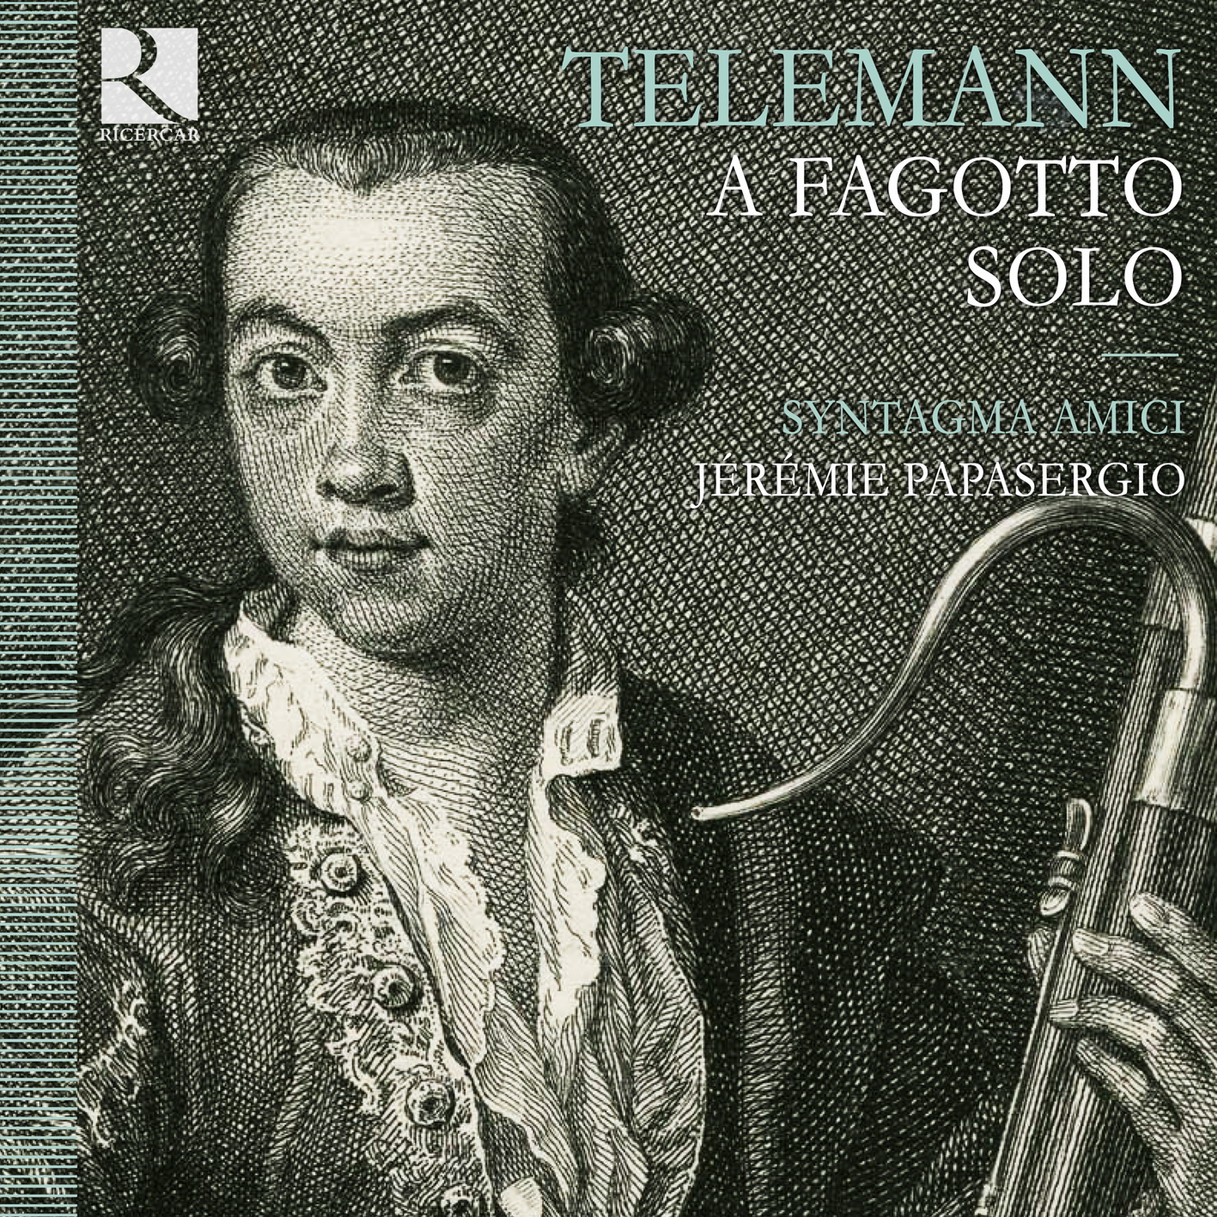 Syntagma Amici, Jeremie Papasergio - Telemann: A fagotto solo (2011) [Qobuz FLAC 24bit/44,1kHz]